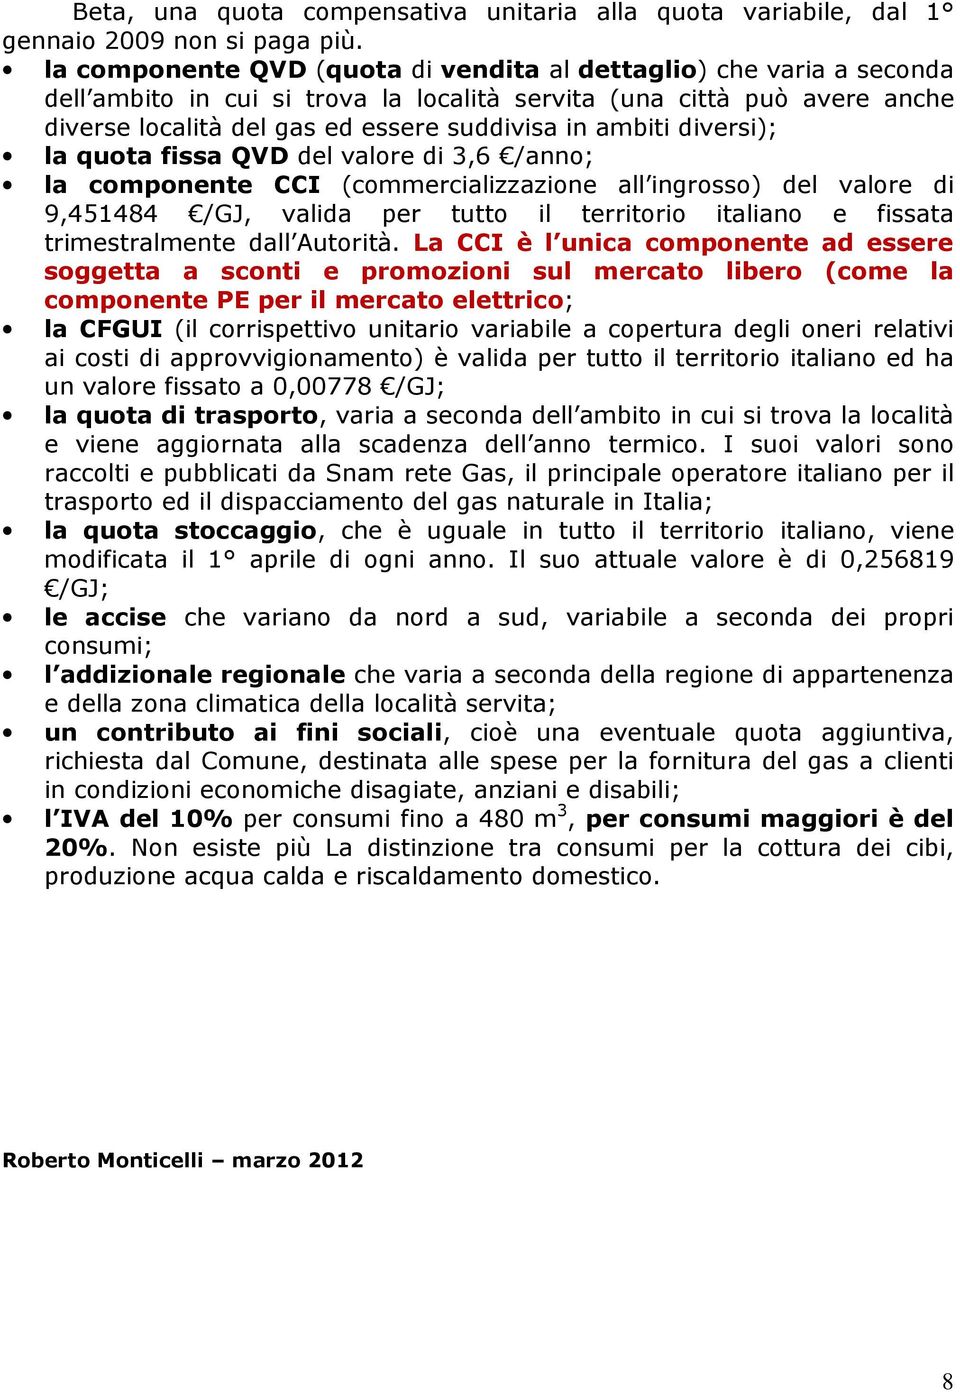 diversi); la quota fissa QVD del valore di 3,6 /anno; la componente CCI (commercializzazione all ingrosso) del valore di 9,451484 /GJ, valida per tutto il territorio italiano e fissata